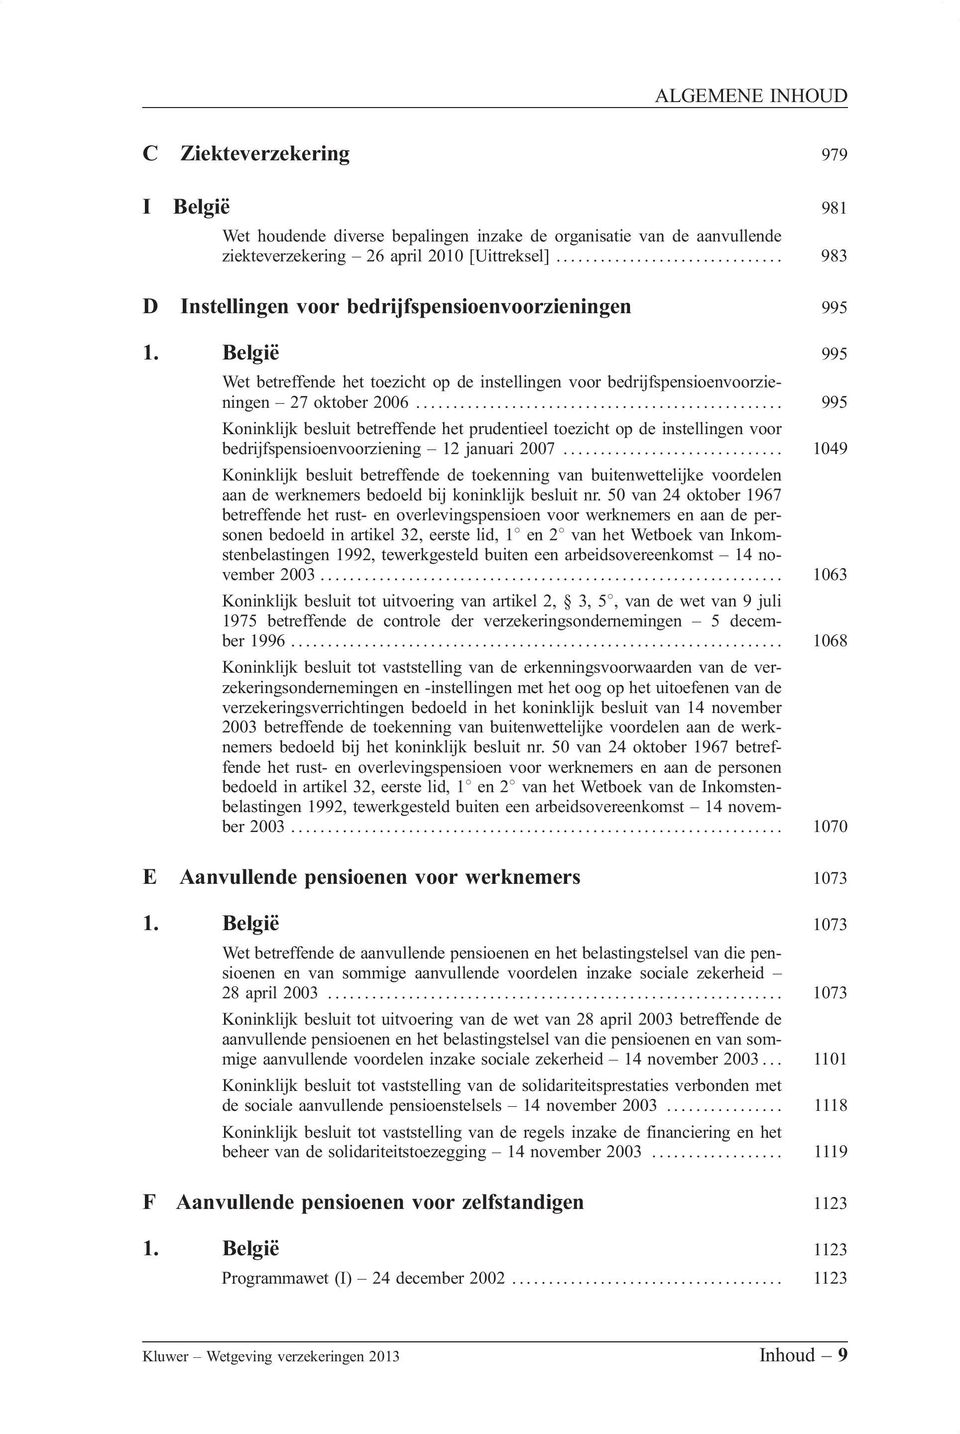 België 995 Wet betreffende het toezicht op de instellingen voor bedrijfspensioenvoorzieningen 27 oktober 2006.